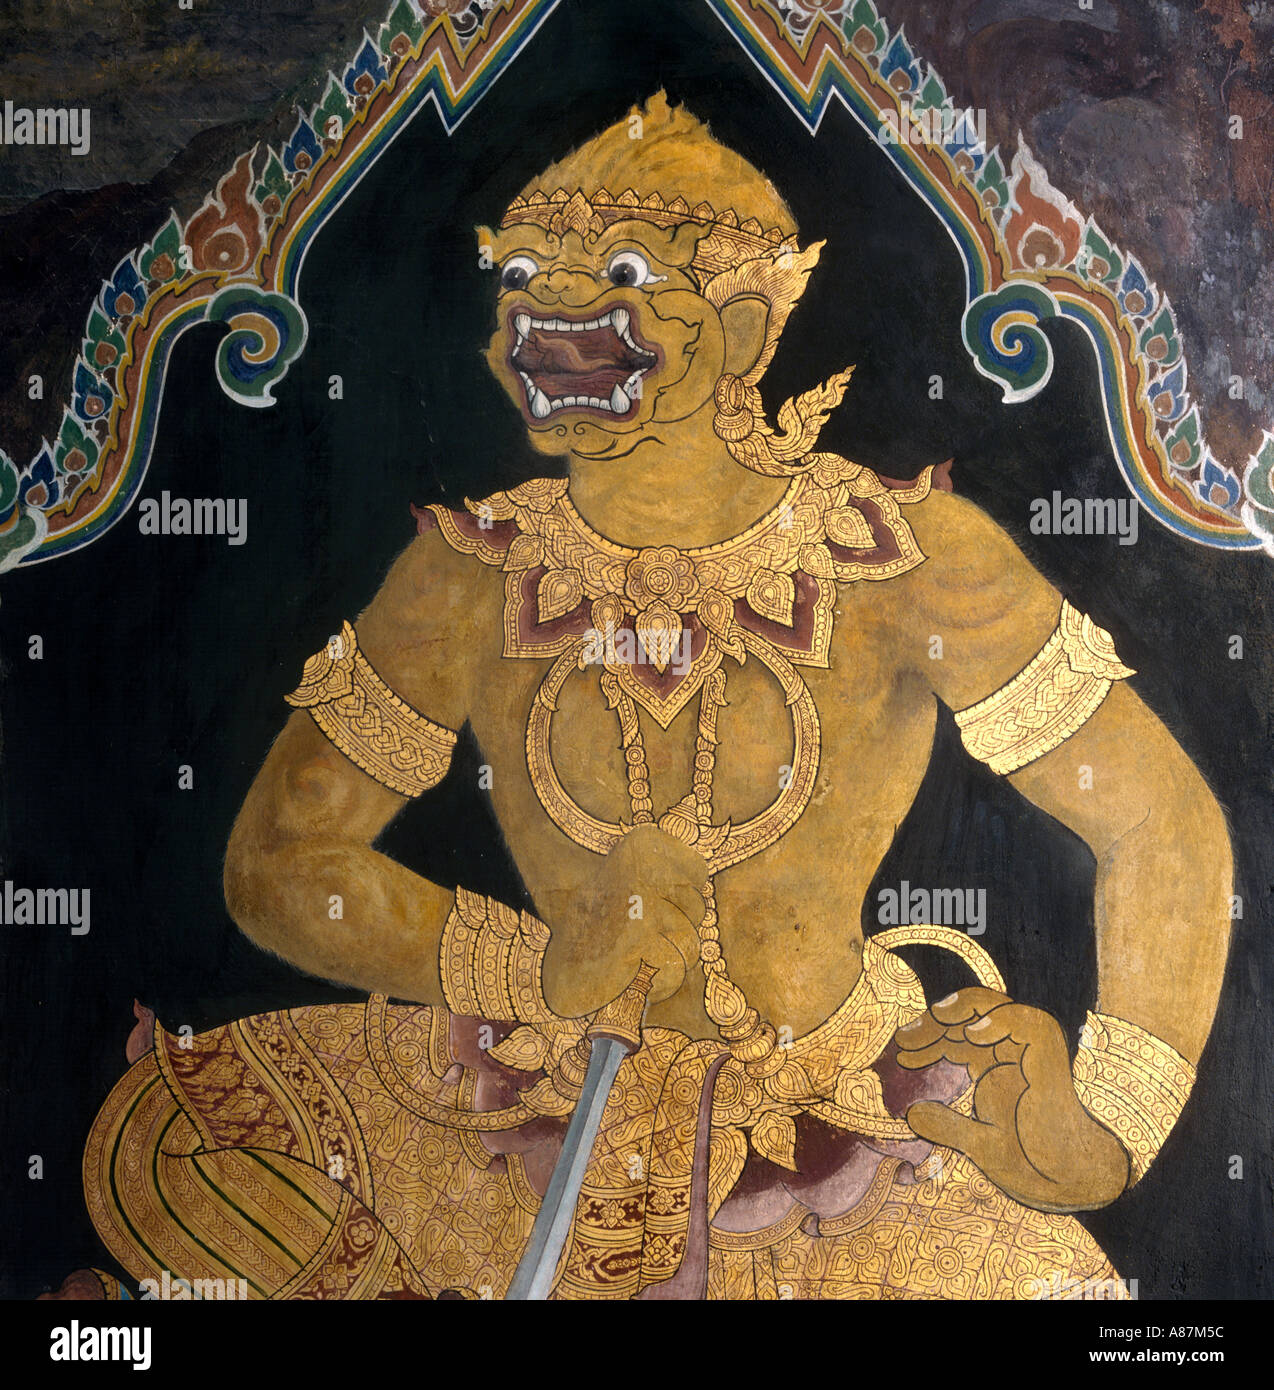 Detail of Mural in Hor Phra Naga, Grand Palace, Bangkok, Thailand Stock Photo